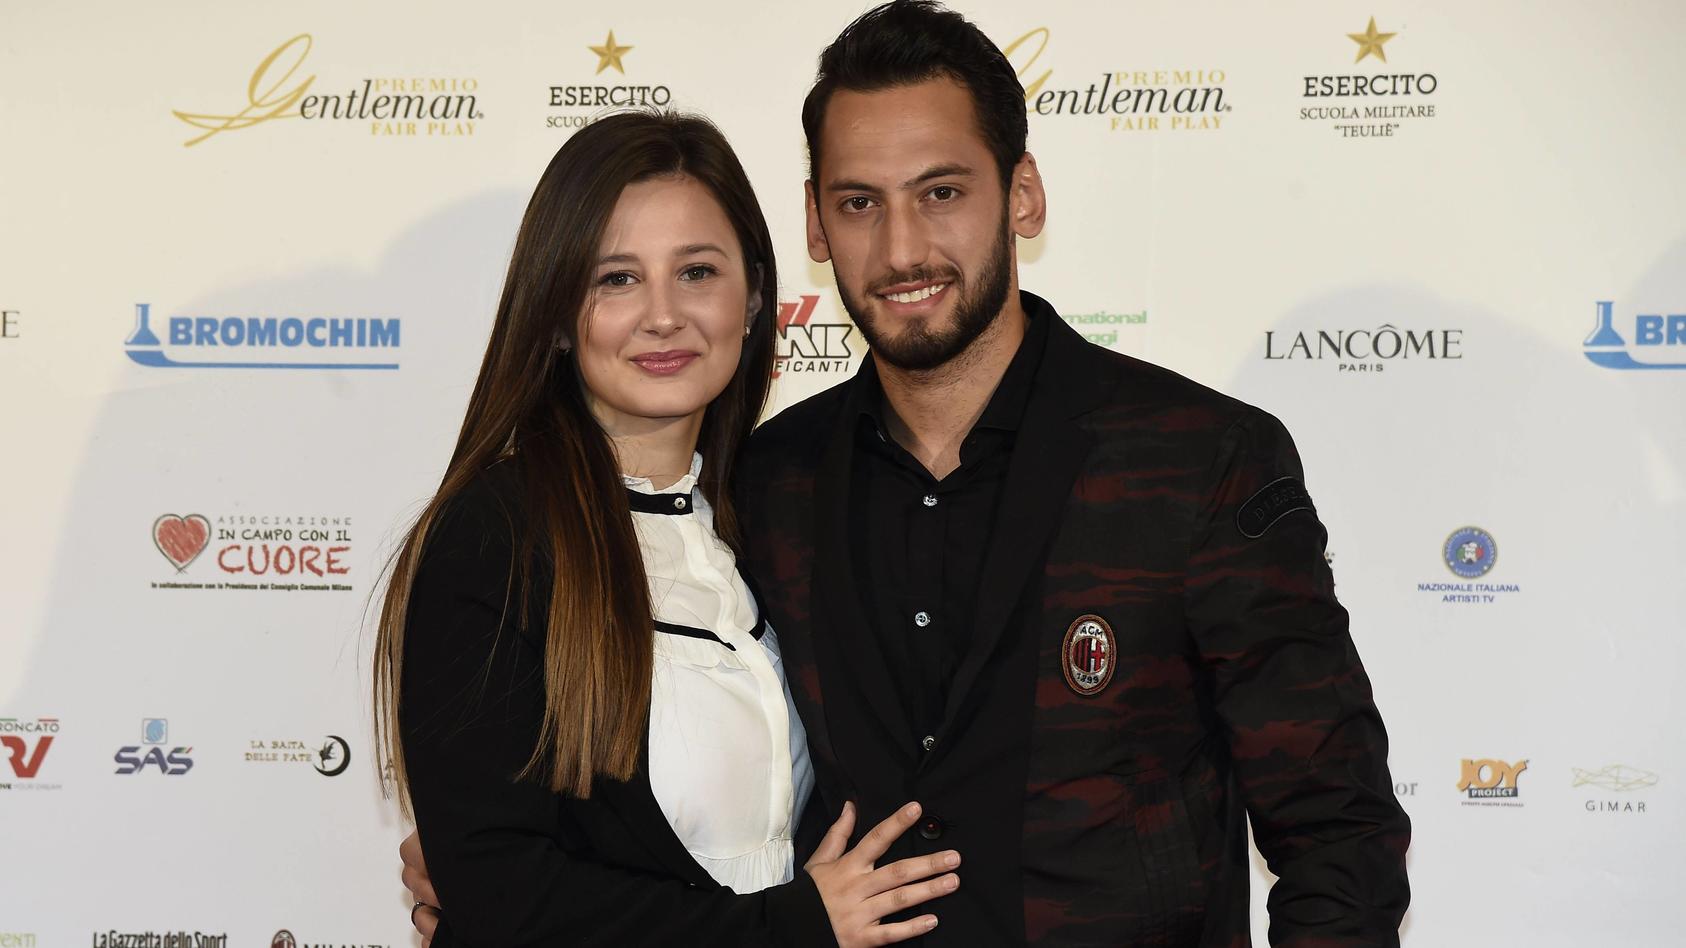 Mitte Mai schien noch alles in Ordnung: Hakan Calhanoglu und seine Frau Sinem zeigten sich glücklich bei einem Event in Mailand